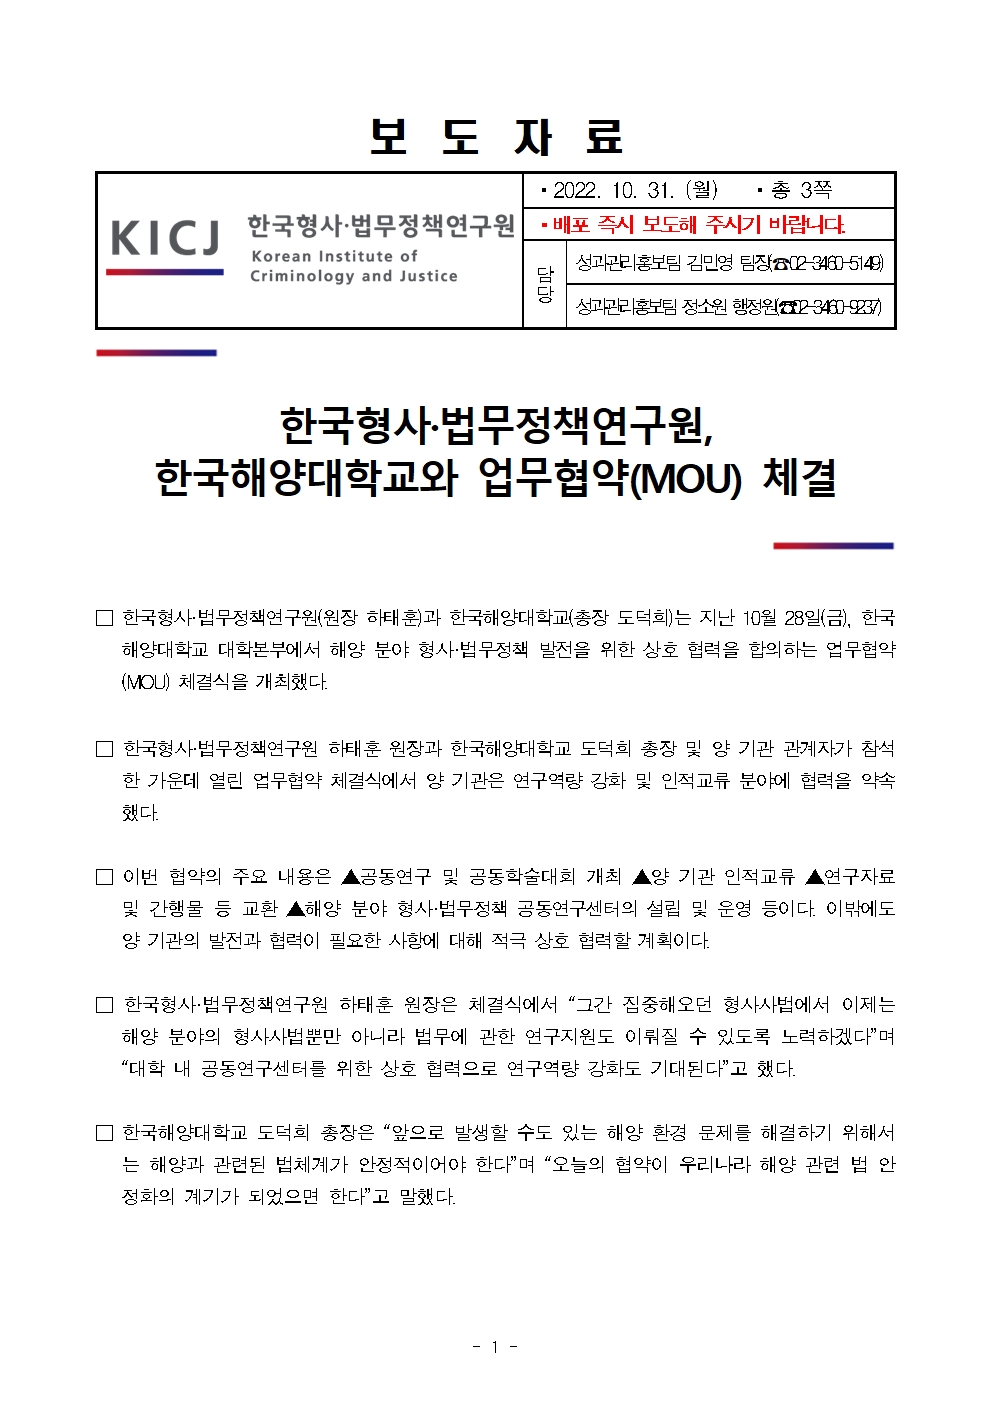 한국형사·법무정책연구원, 한국해양대학교와 업무협약(MOU) 체결 자세한 내용은 하단pdf파일 참조